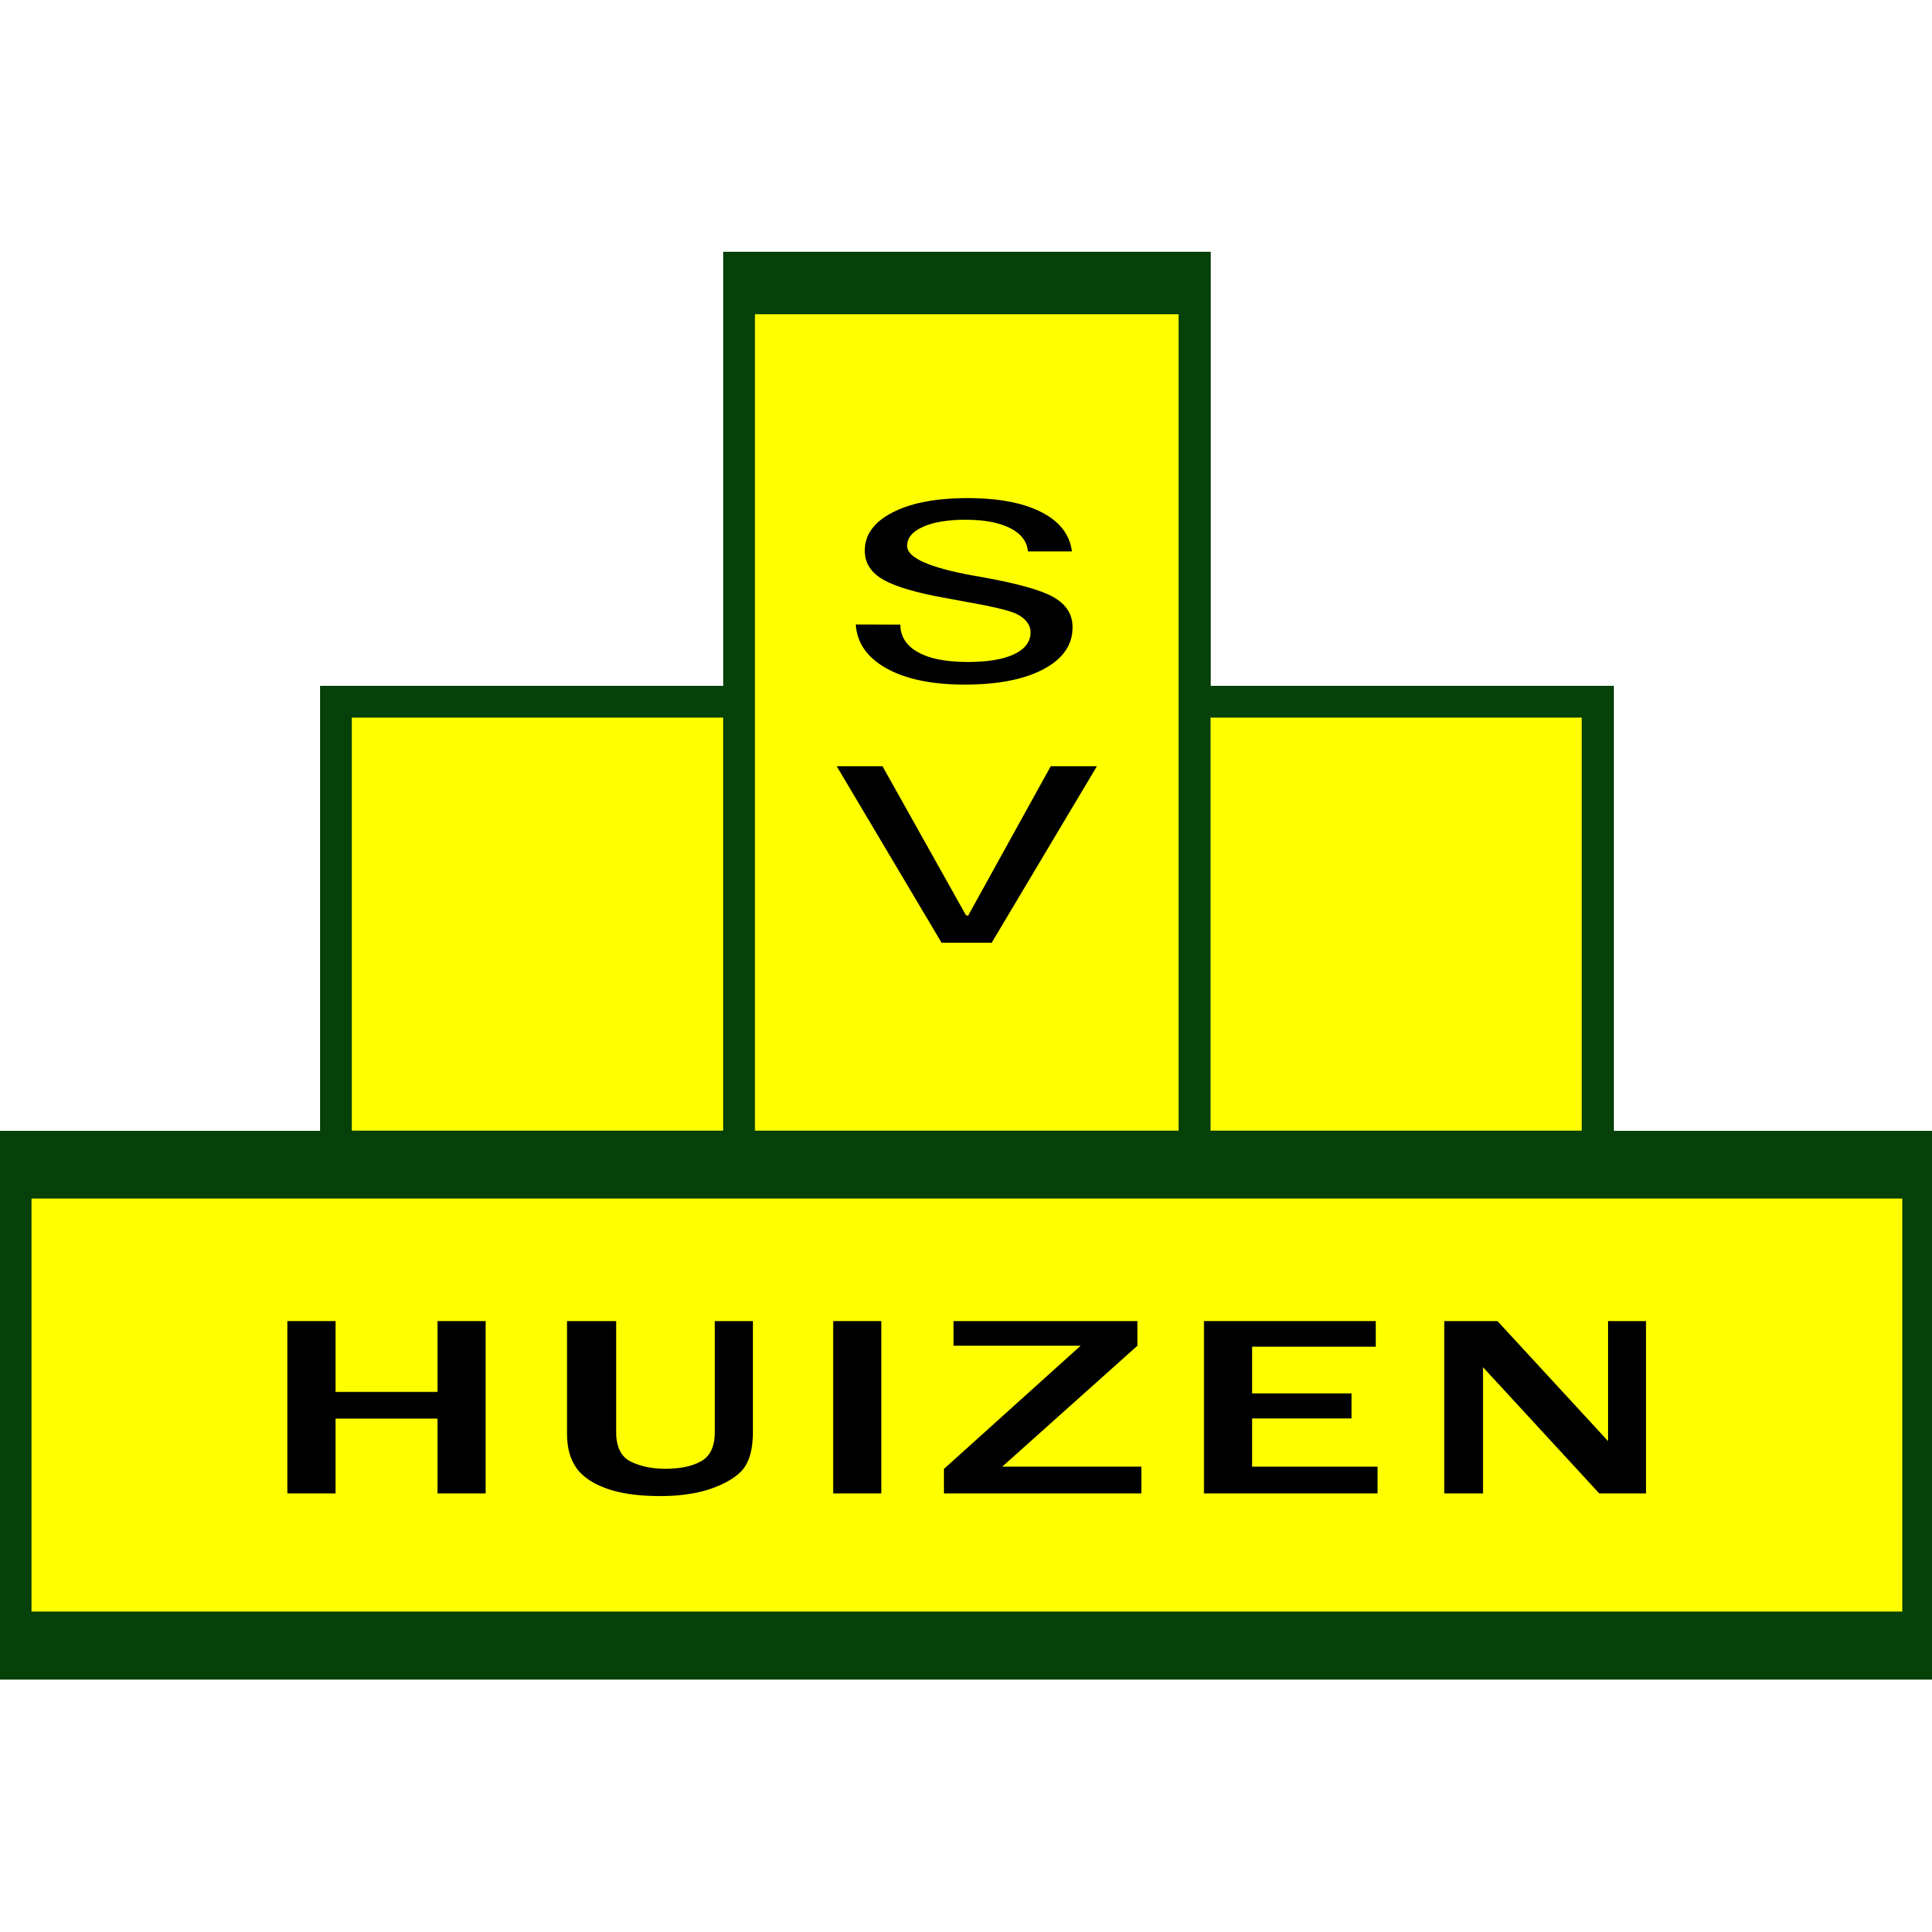 SV Huizen Logo  Transparent Photo